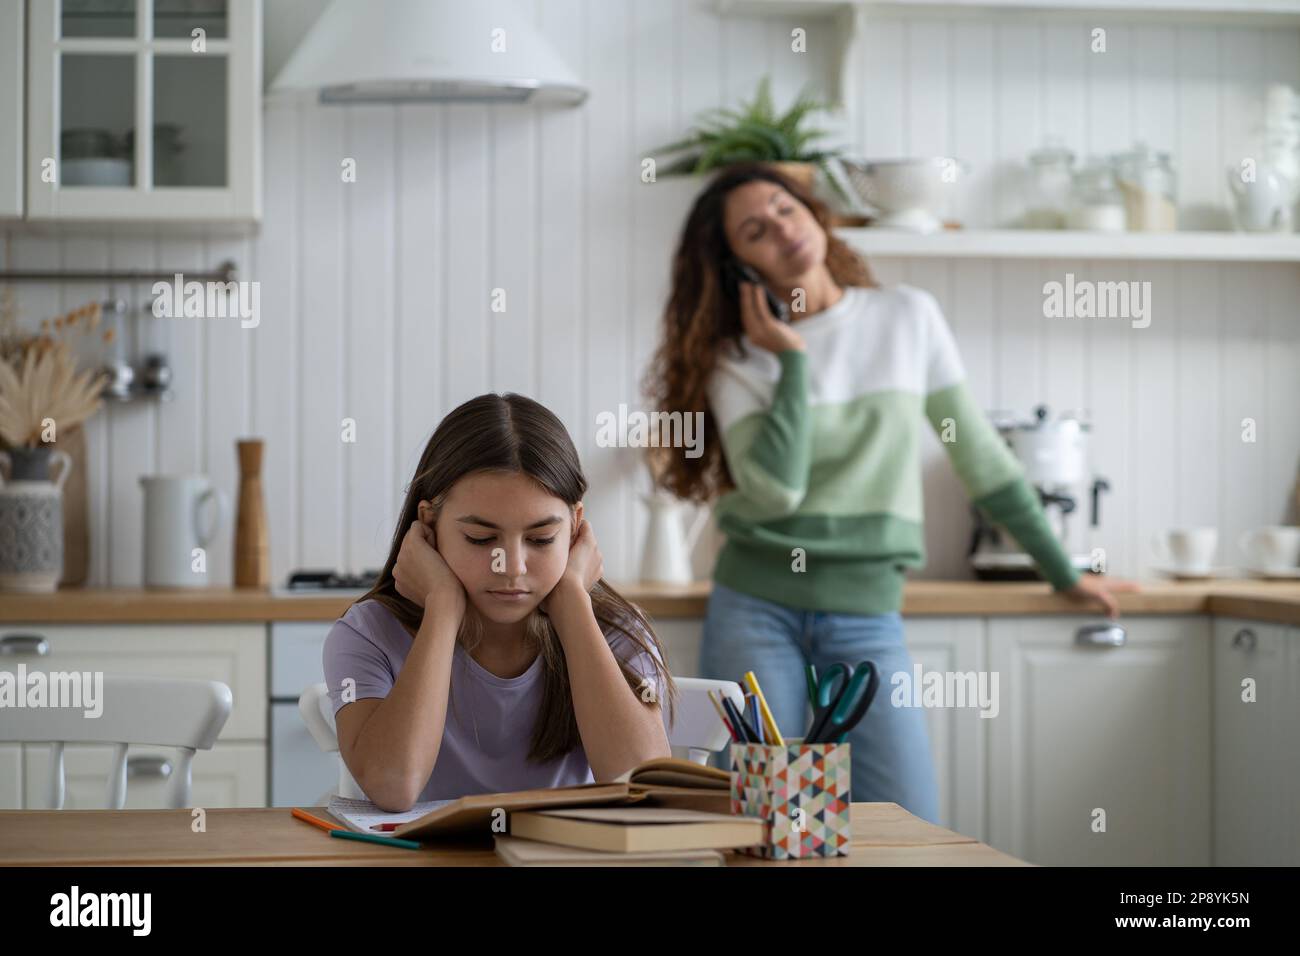 La ragazza teen concentrata che legge i libri che preparano il rapporto o il saggio per la scuola siede al tavolo Foto Stock